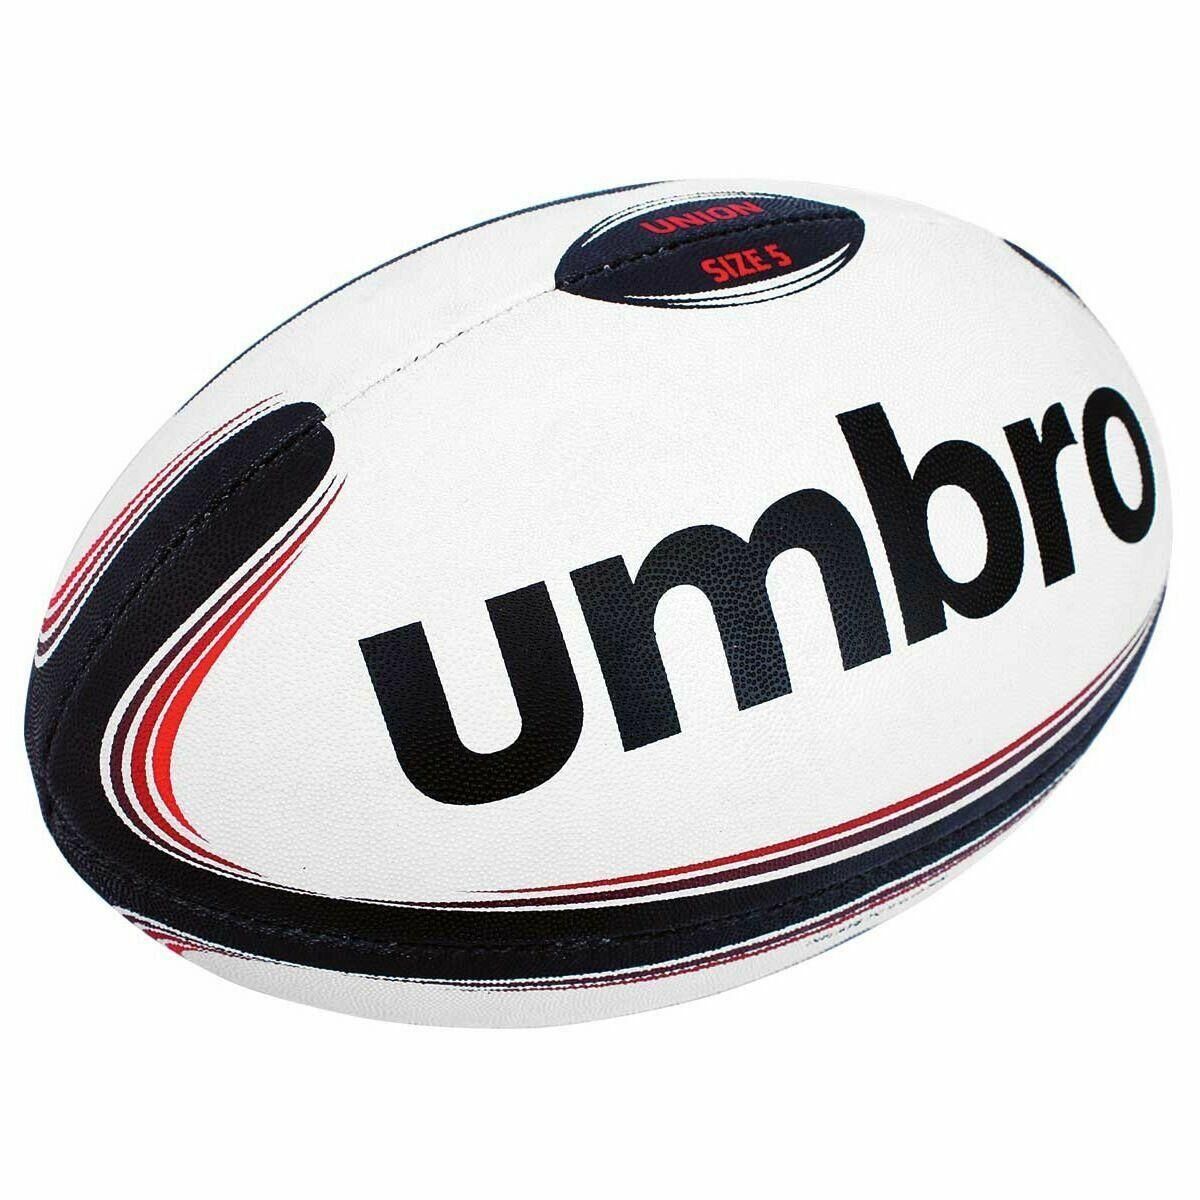 UMBRO Umbro Training Rugby Ball Size 5